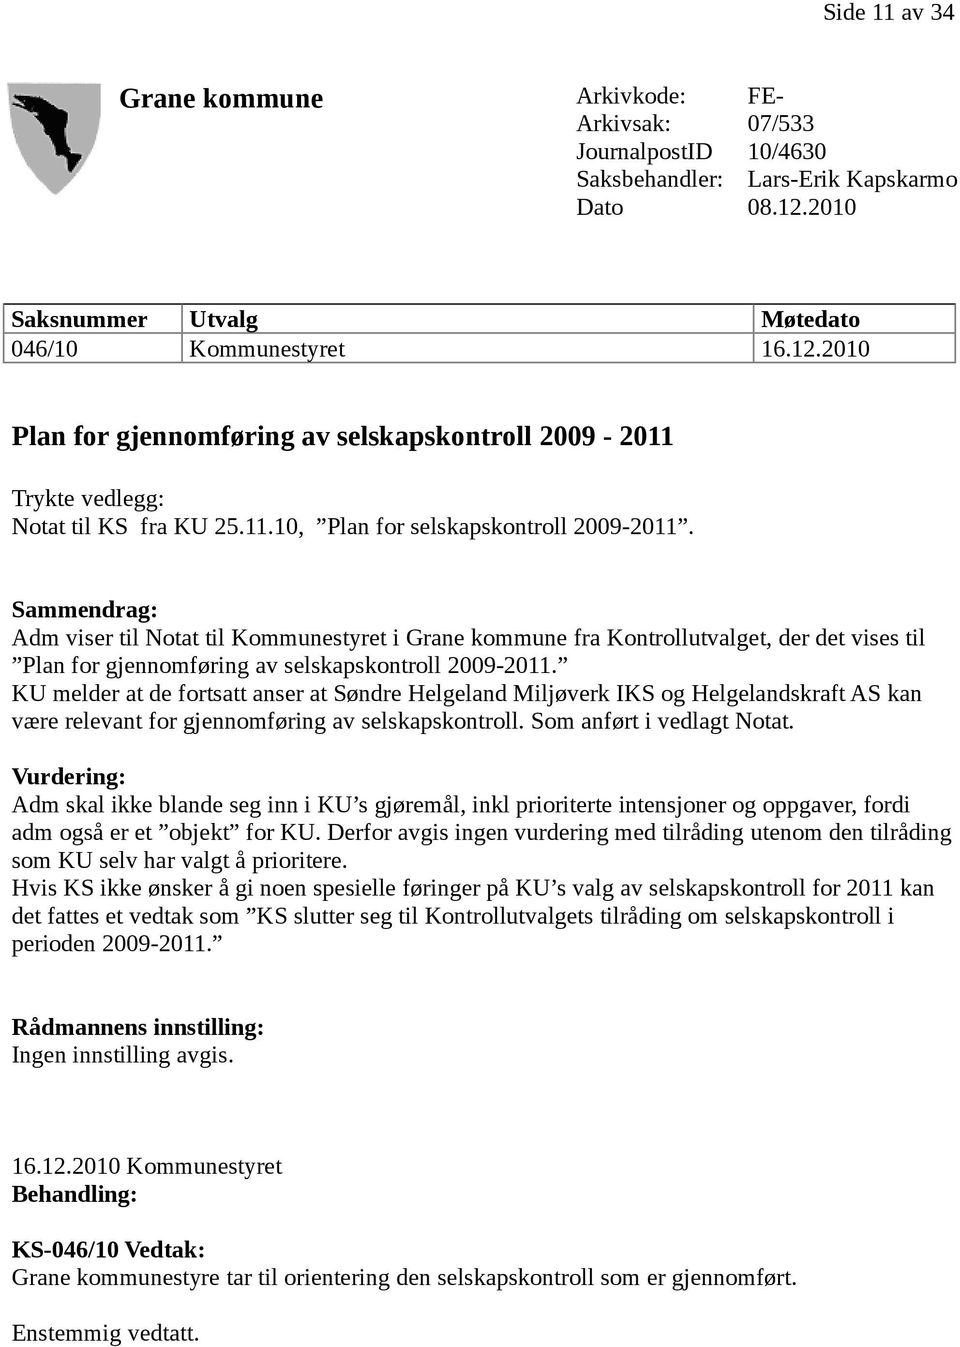 Sammendrag: Adm viser til Notat til Kommunestyret i Grane kommune fra Kontrollutvalget, der det vises til Plan for gjennomføring av selskapskontroll 2009-2011.